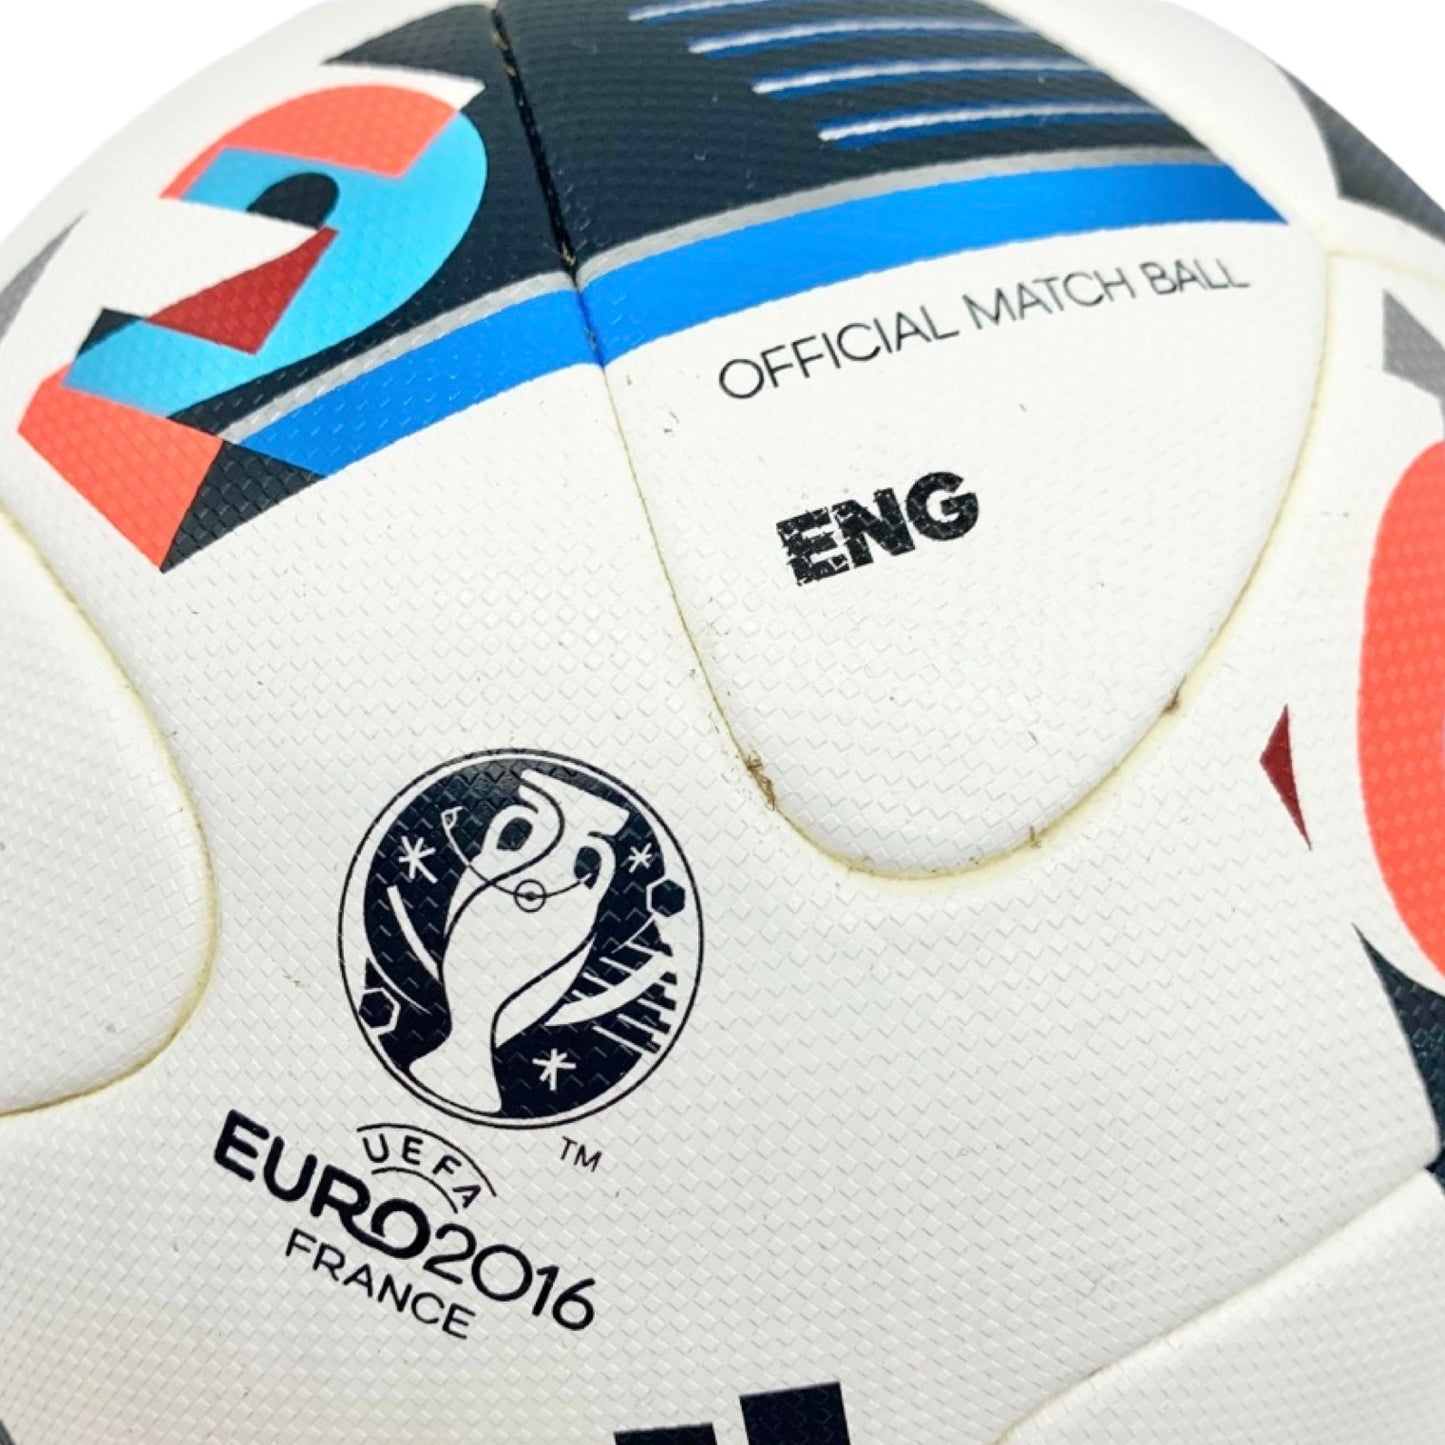 Balón de entrenamiento Adidas Beau Jeu UEFA Euro 2016 Inglaterra